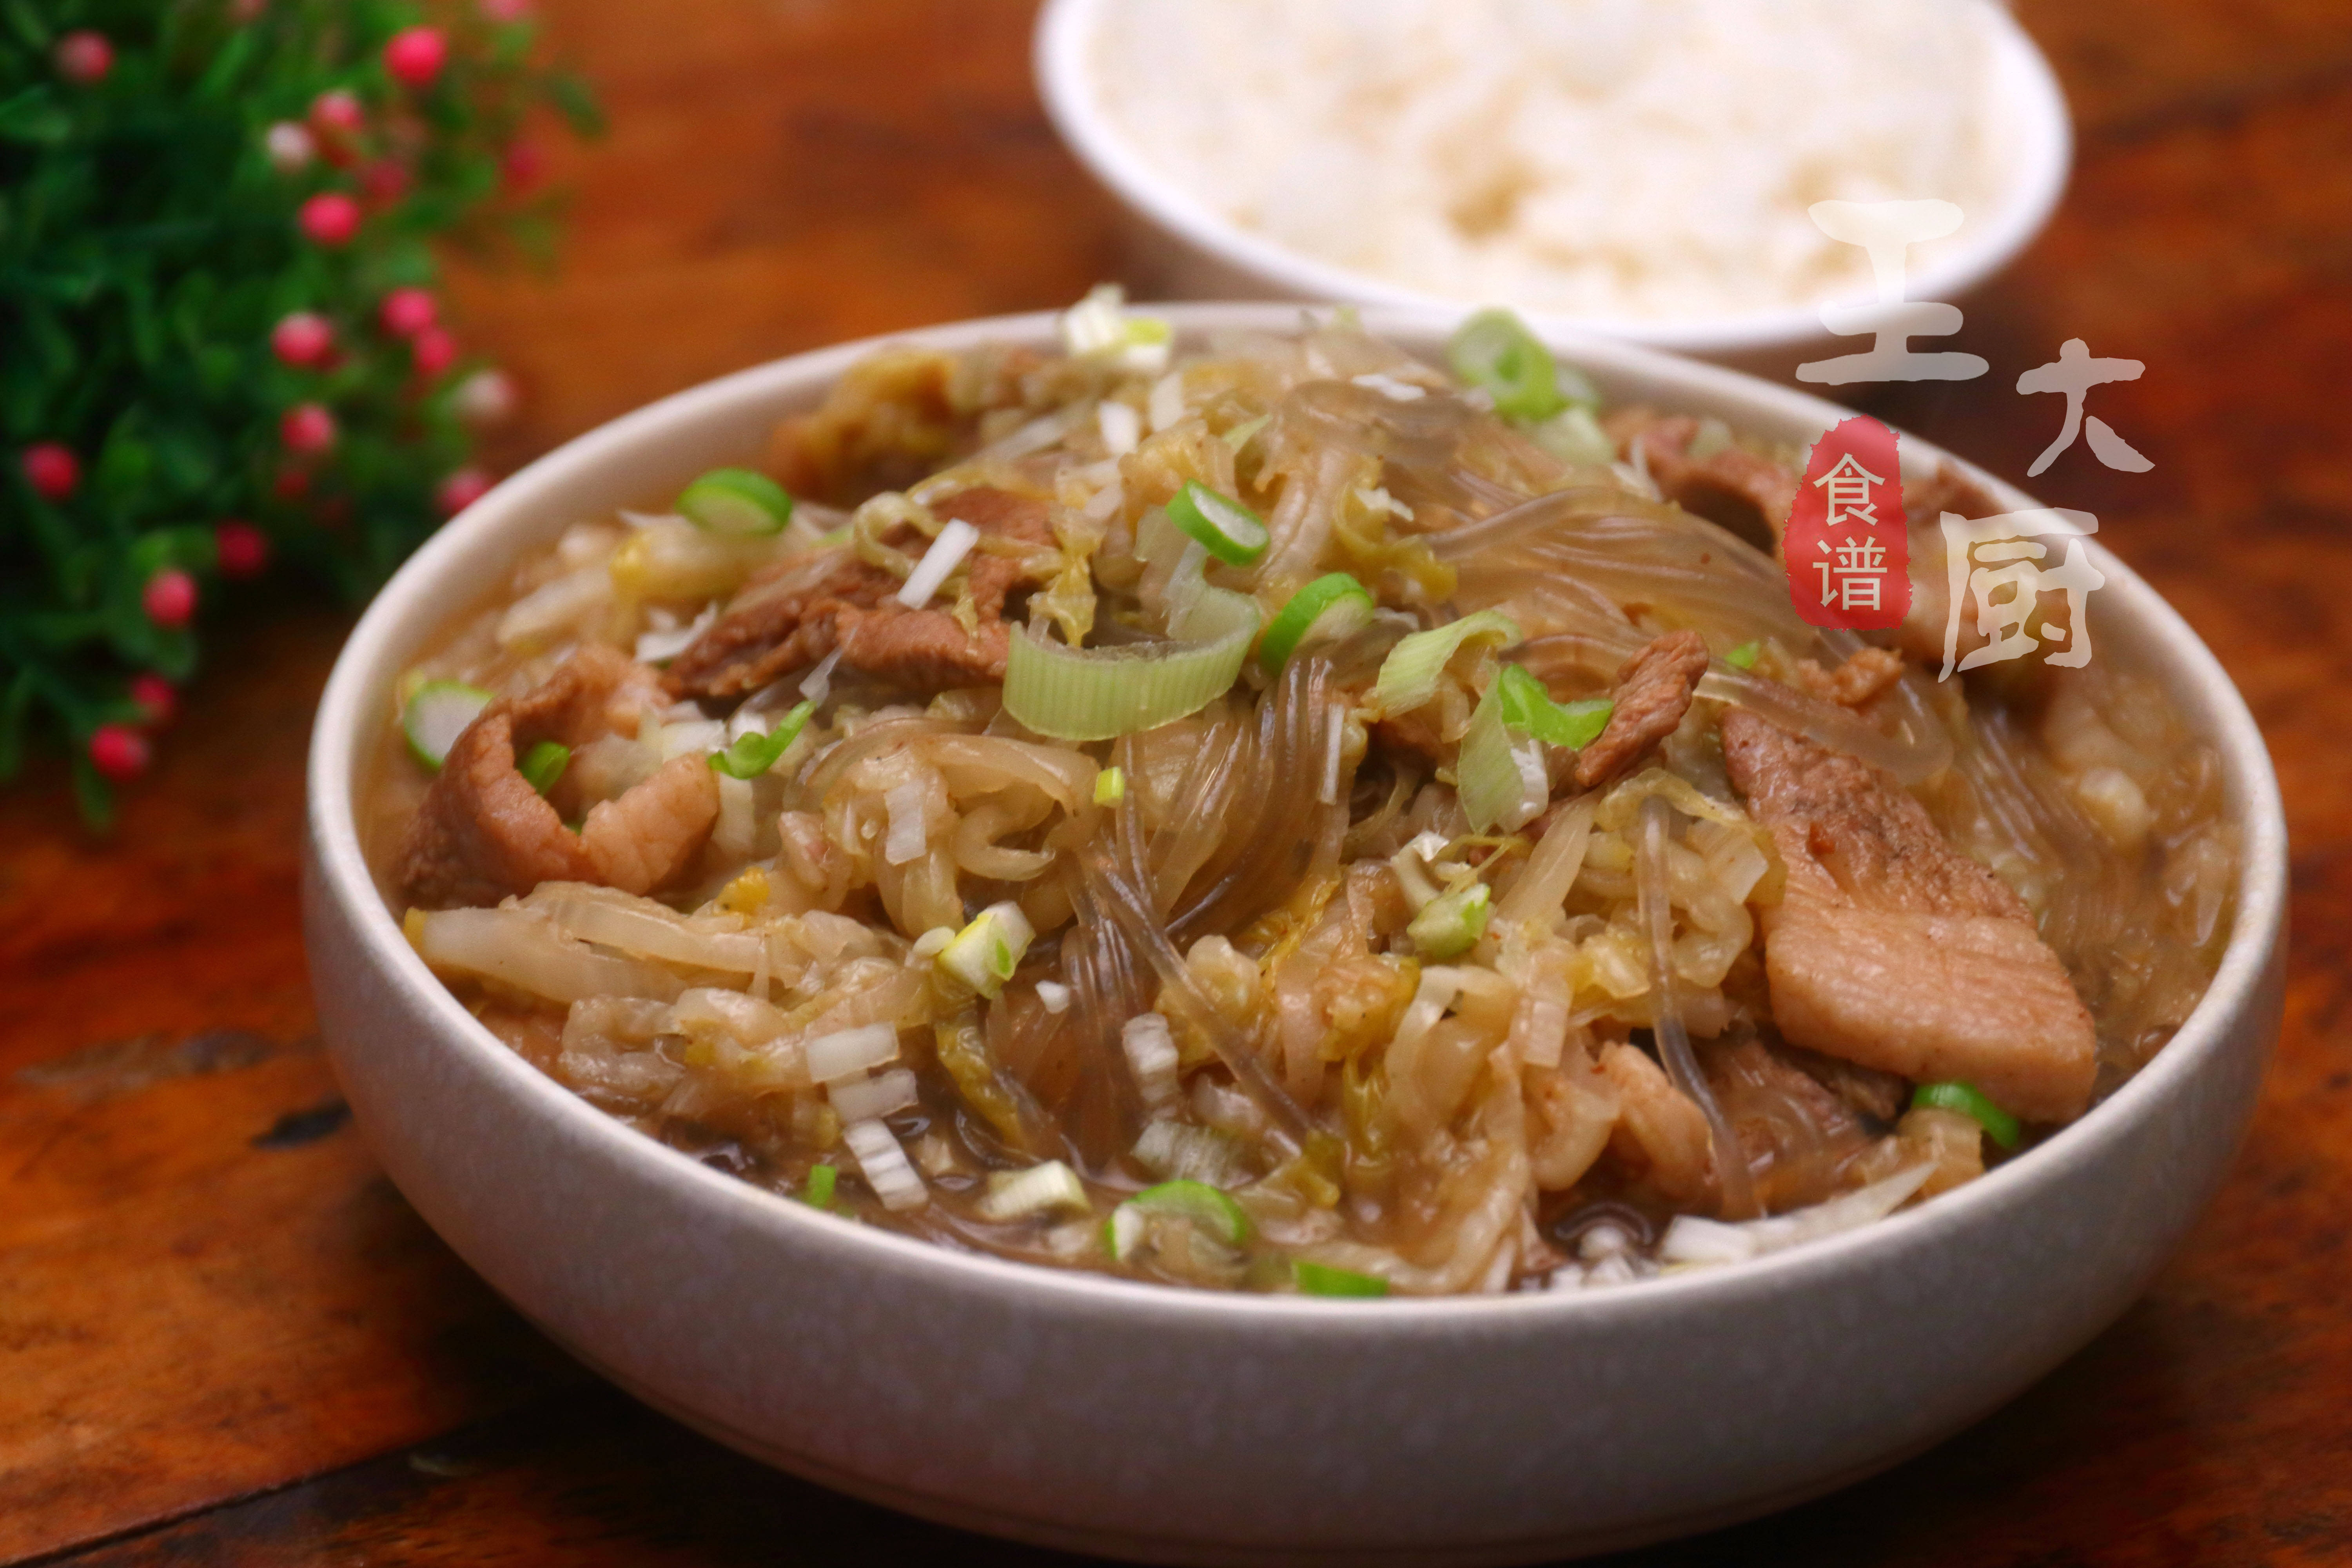 东北农家猪肉酸菜炖粉条,酸爽开胃,配着这道菜一次吃两大碗米饭